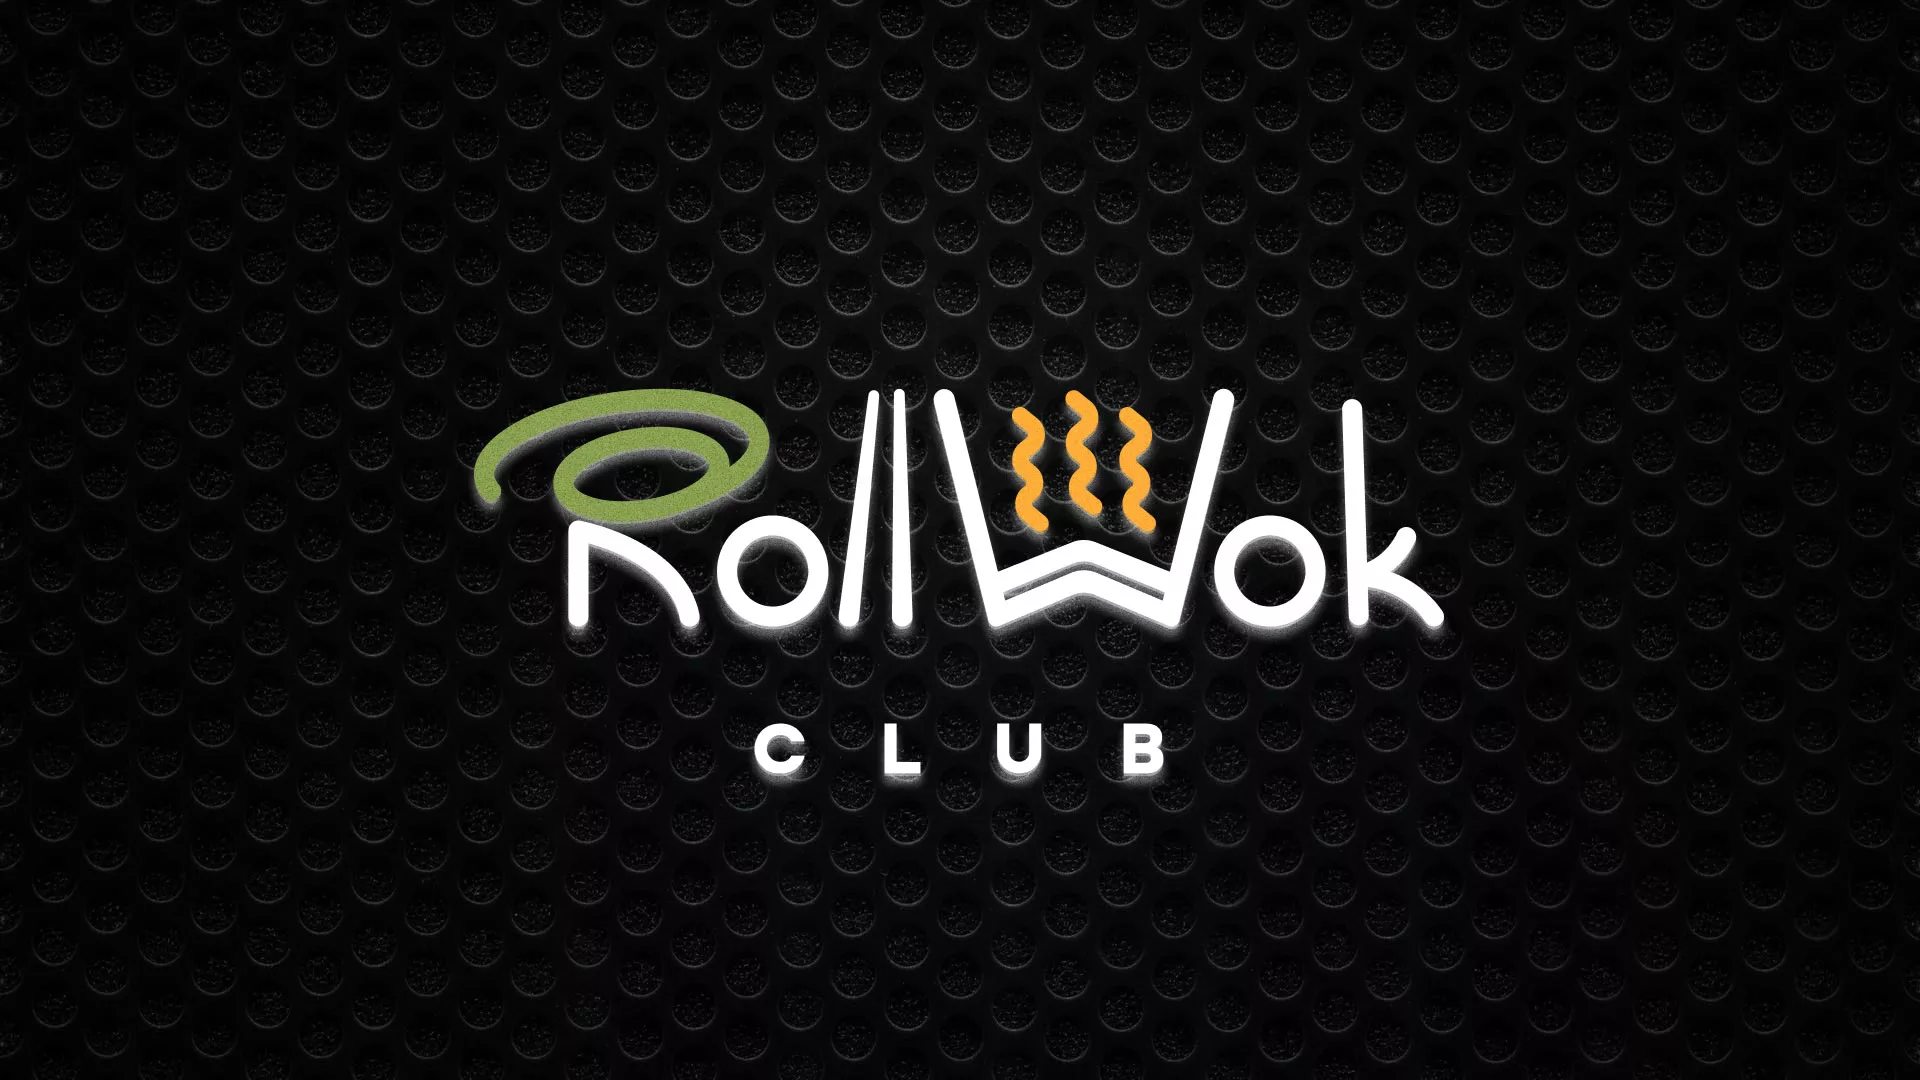 Брендирование торговых точек суши-бара «Roll Wok Club» в Вёшках